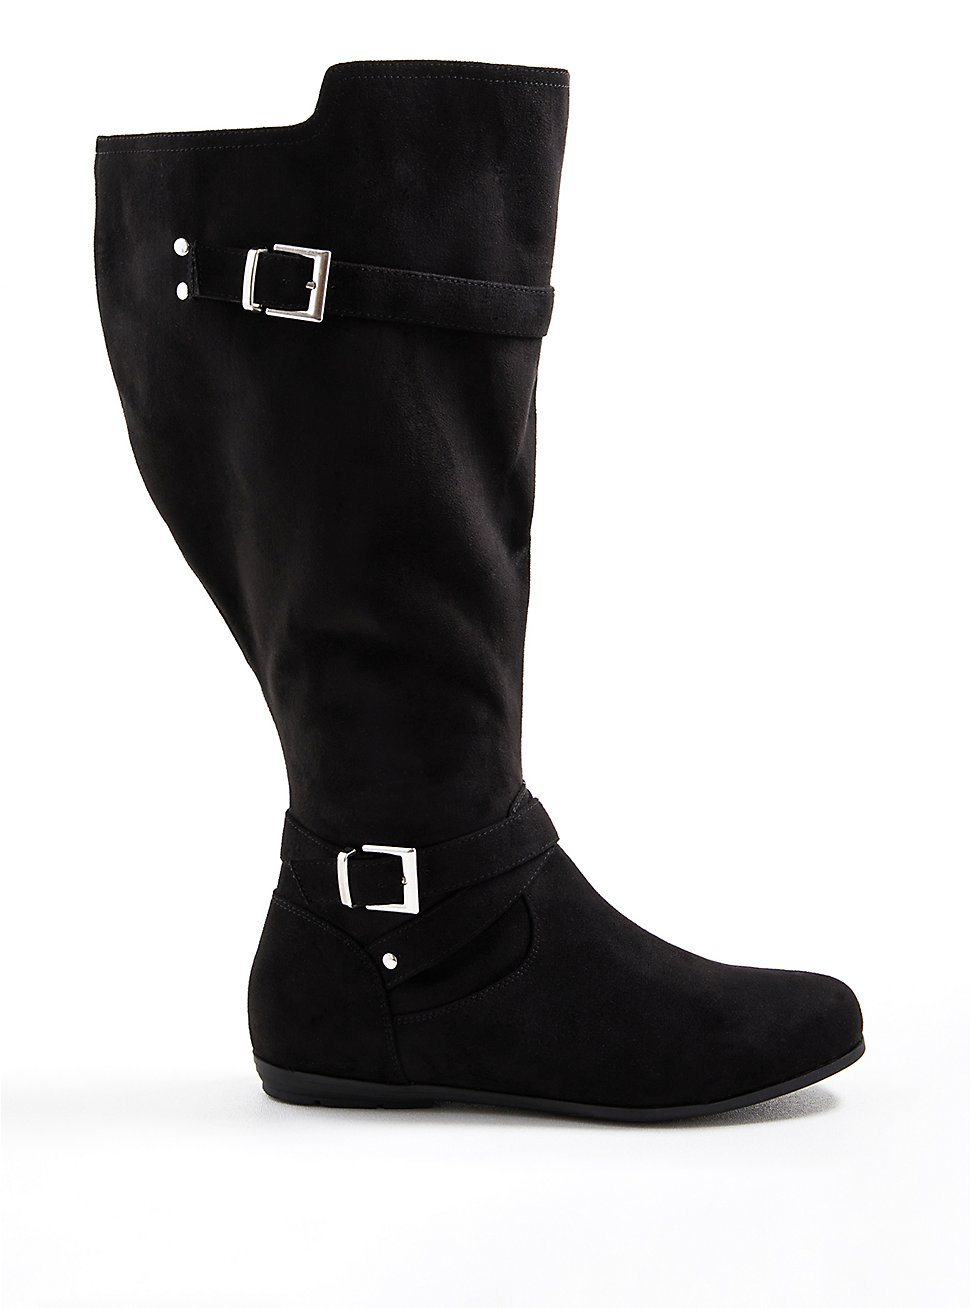 Plus Size Black Faux Suede Double Buckle Knee Boot (WW), BLACK, hi-res